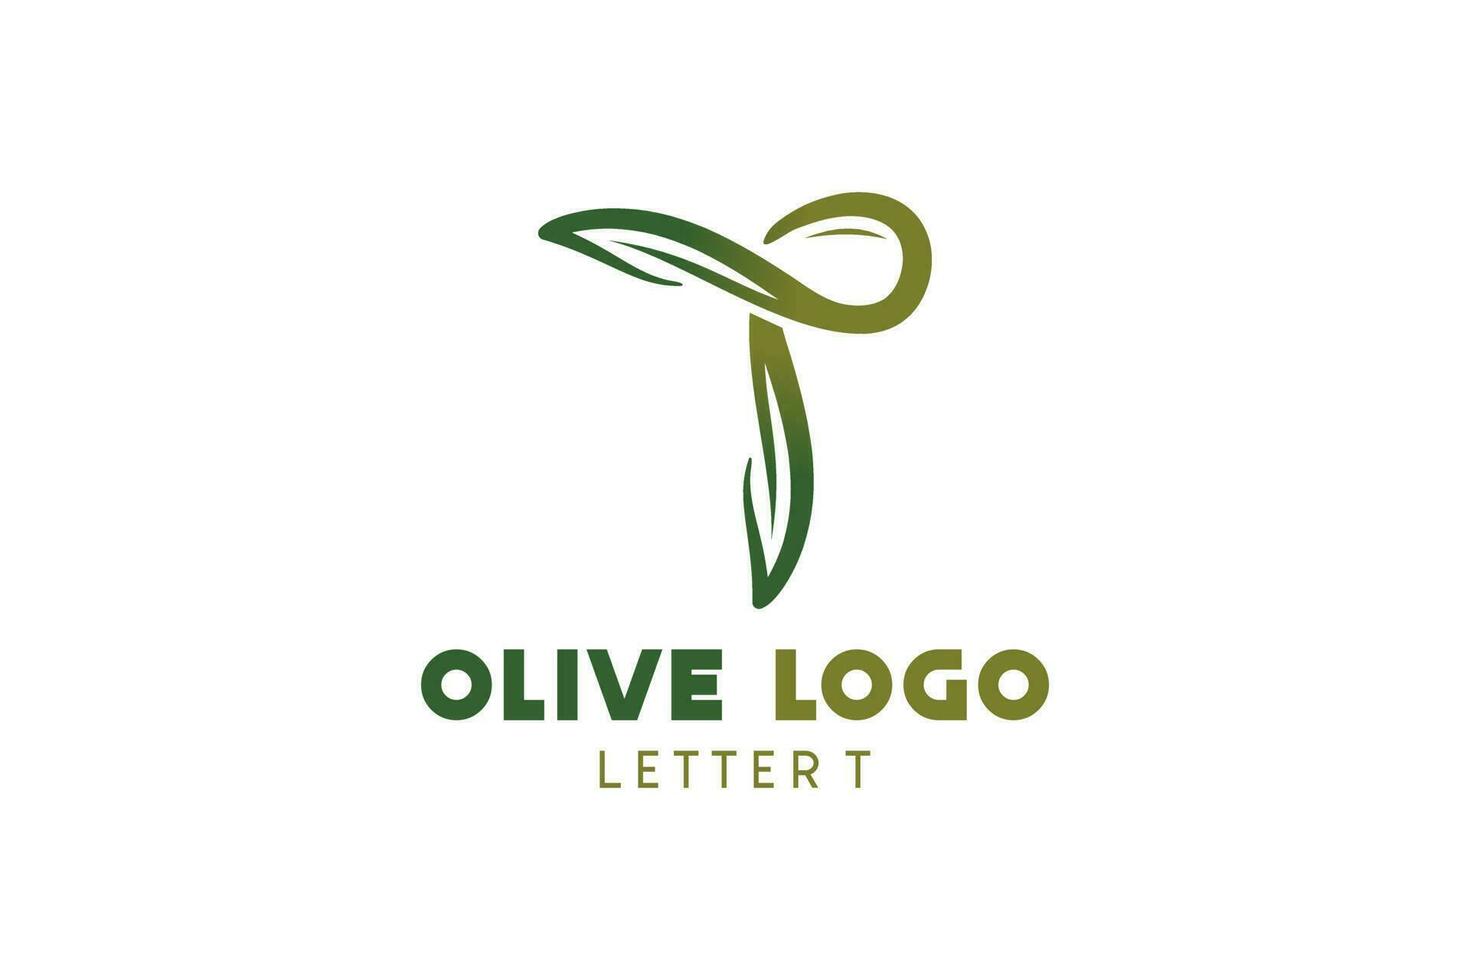 Olive logo design with letter t concept, natural green olive vector illustration